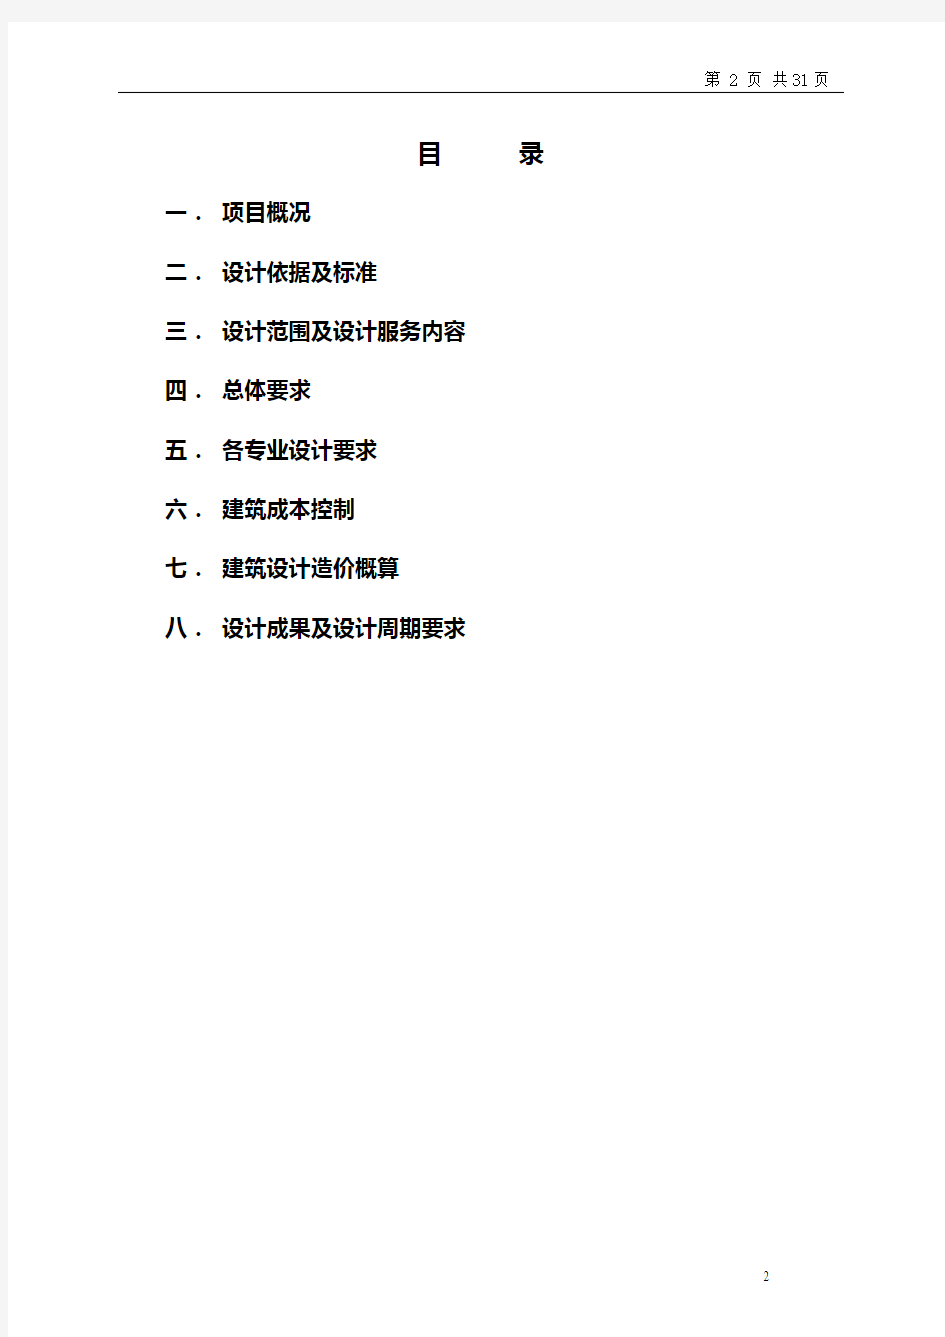 潜江市场一期施工图设计任务书(综合)修改2012.0811